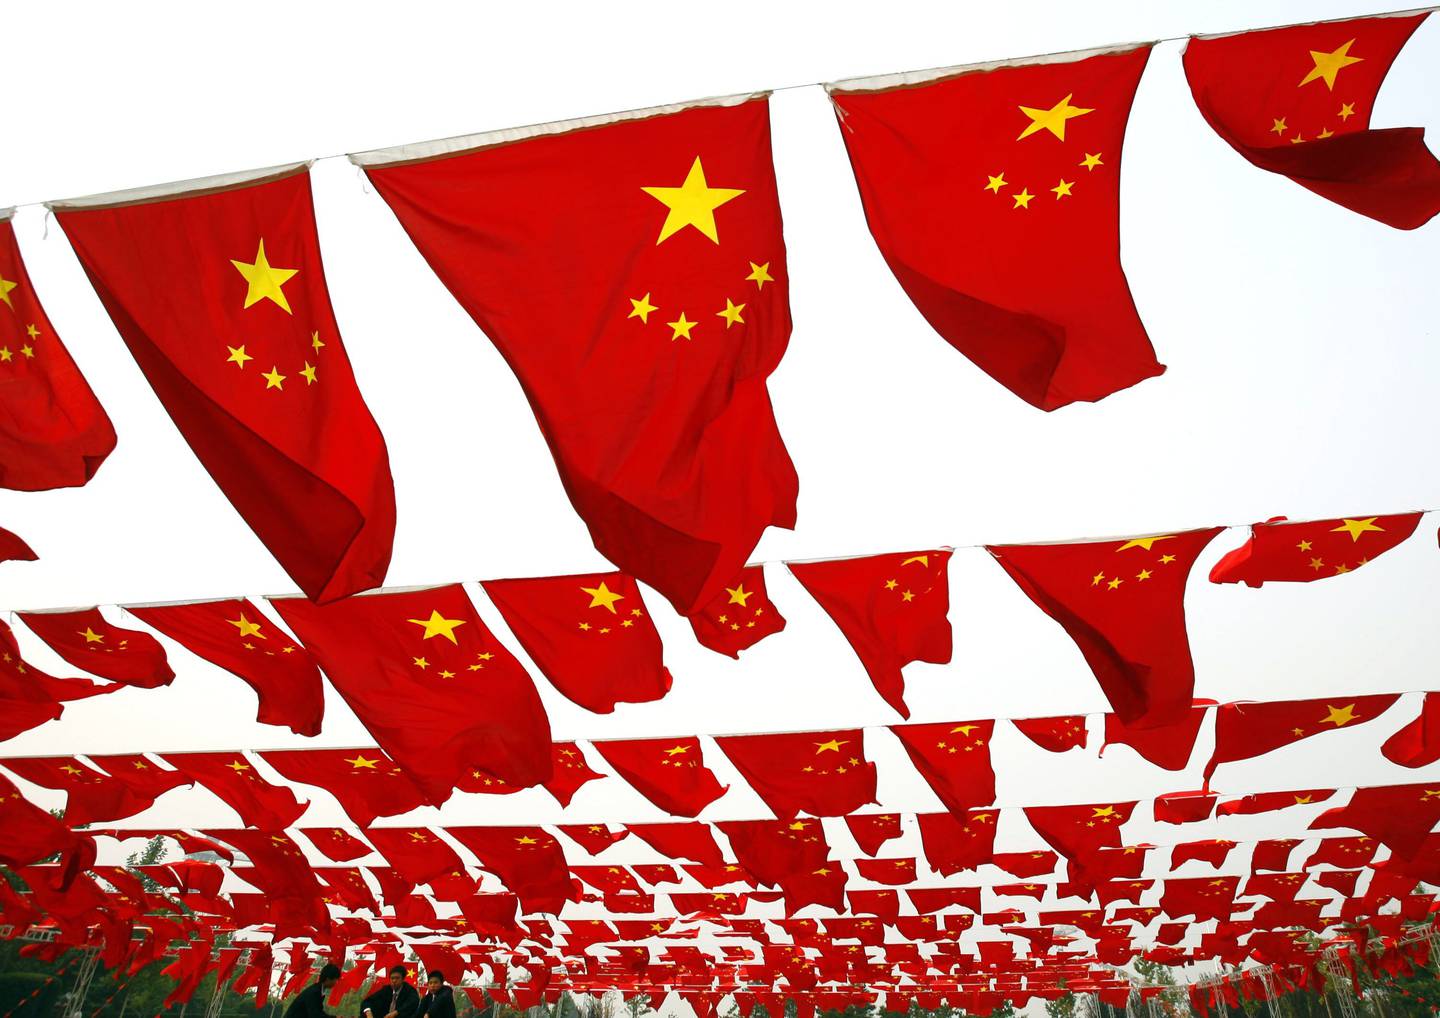 Chinos visitan un espectáculo de la bandera nacional en el parque Chaoyang el 30 de septiembre de 2006 en Beijing, China. (Foto de China Photos/Getty Images).